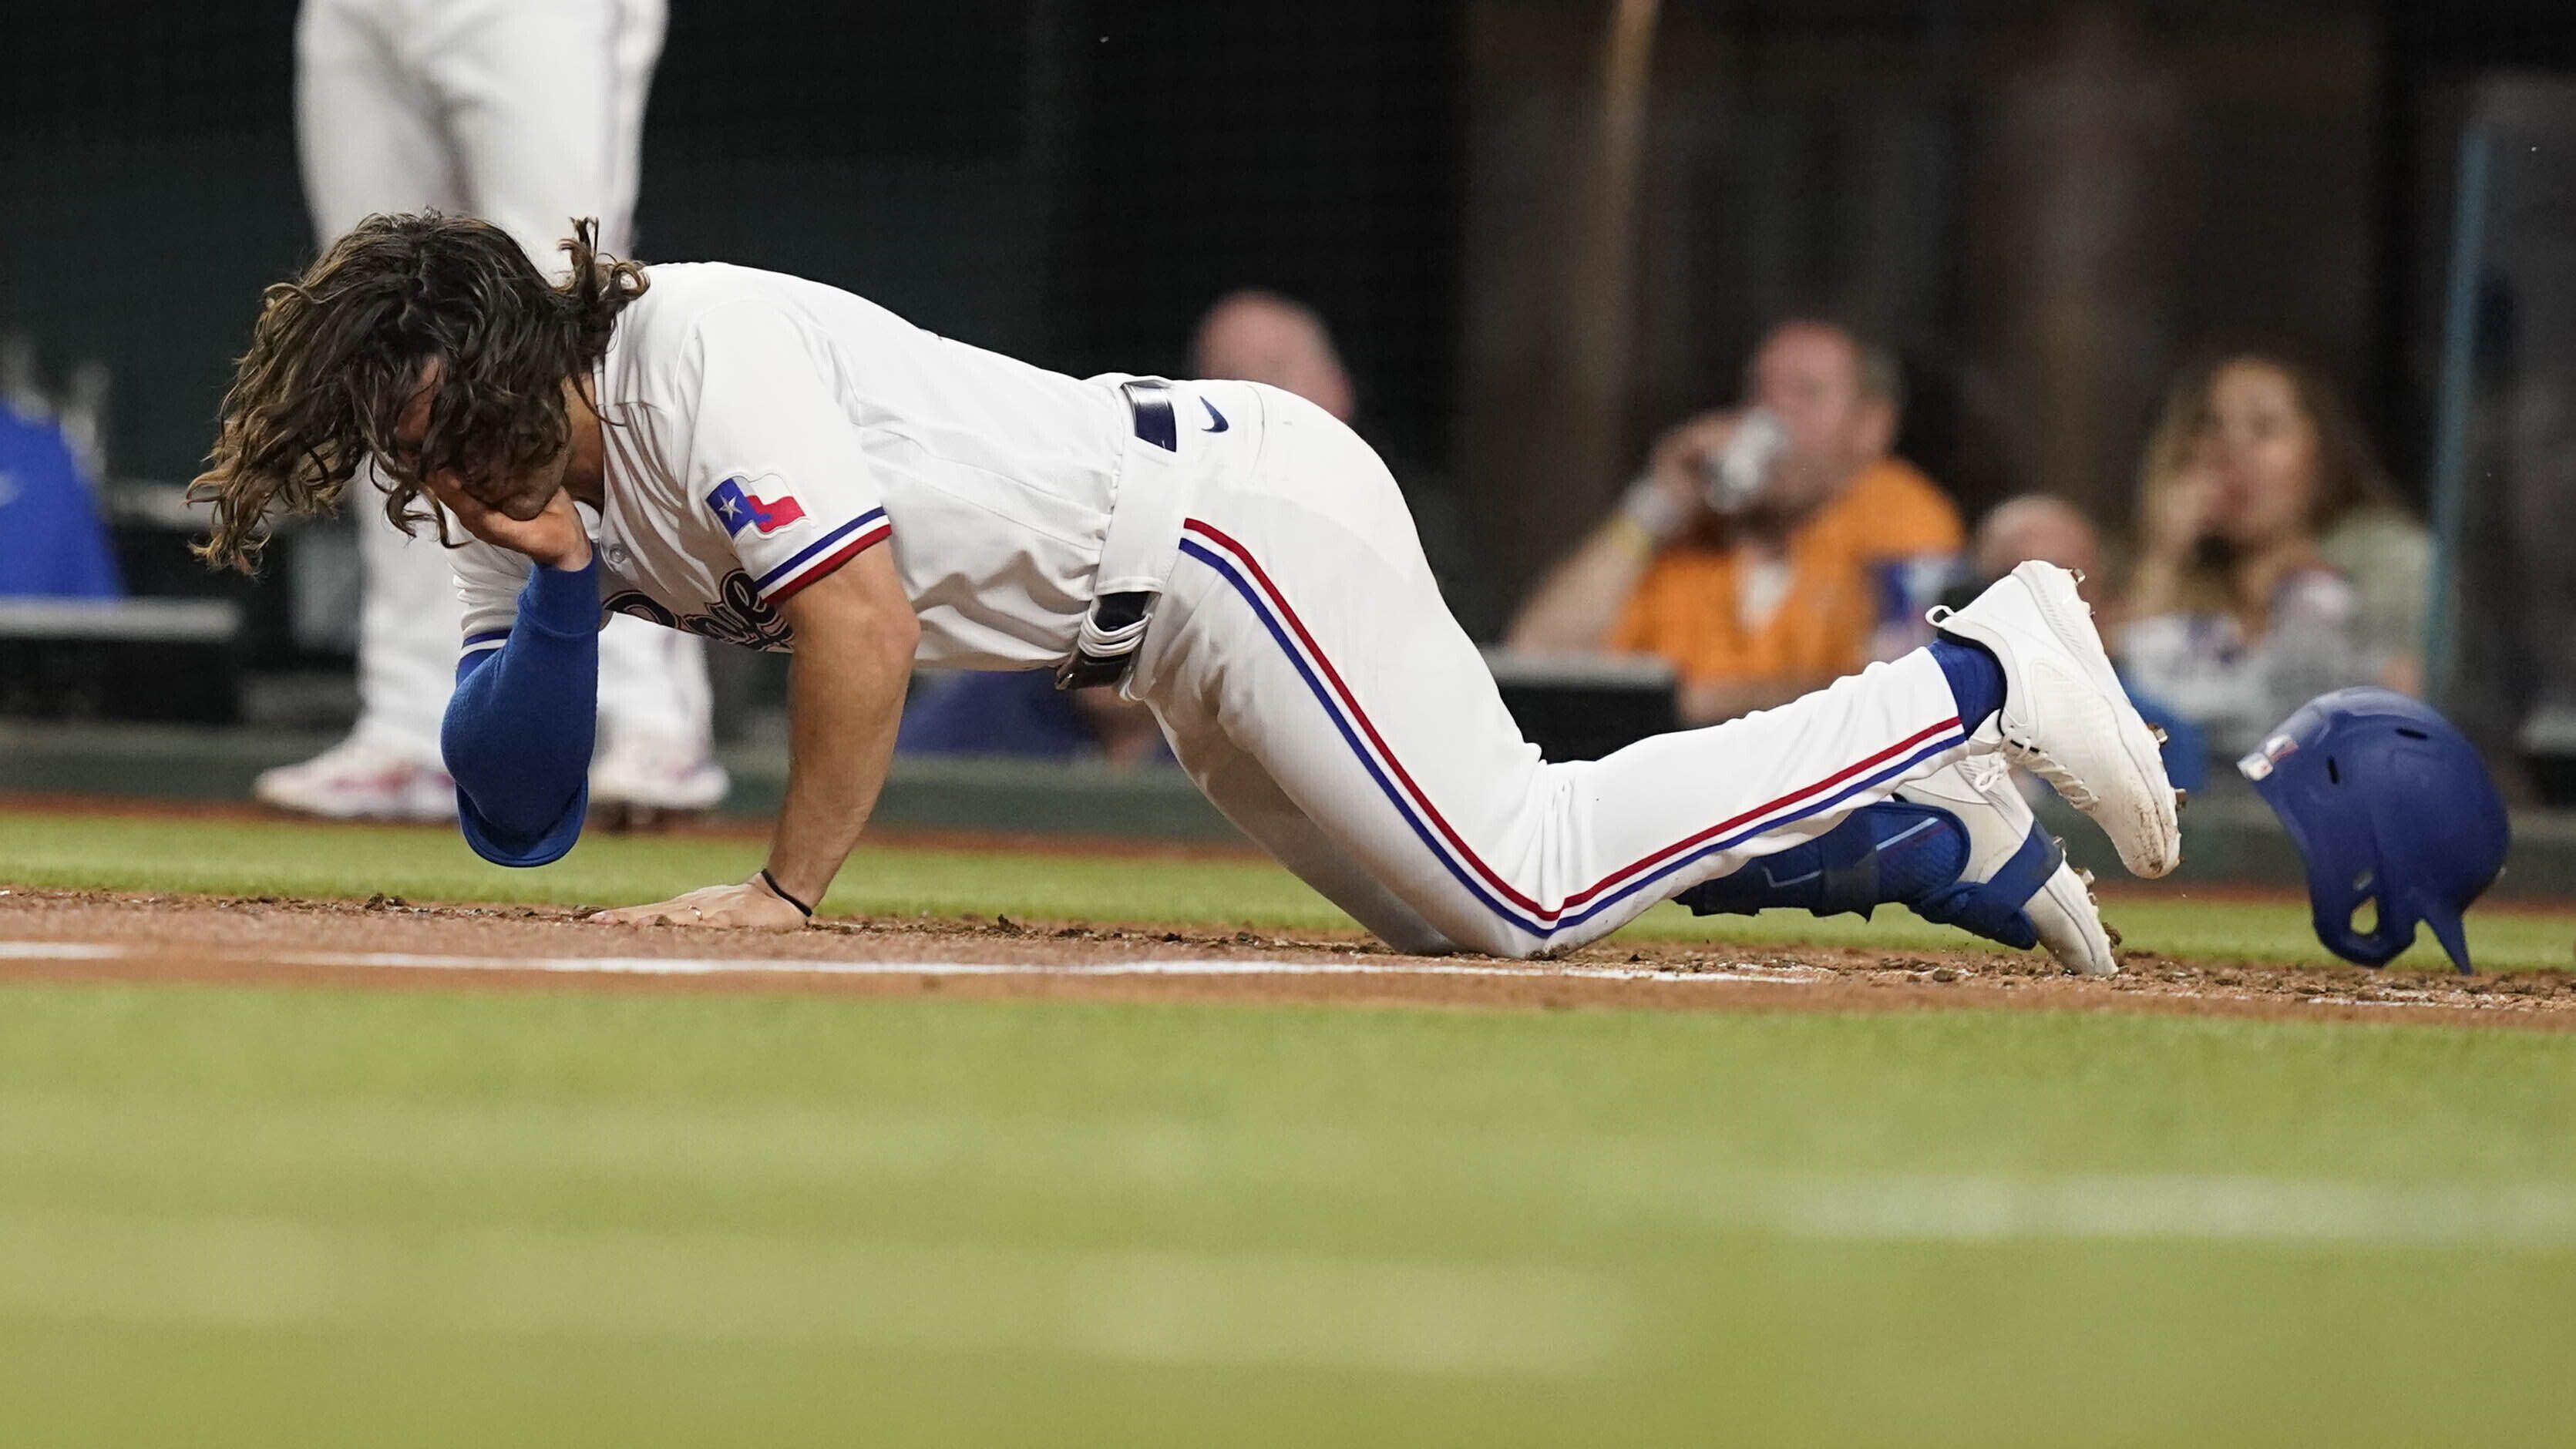 Josh Smith, de los Rangers de Texas, cae después de haber sido golpeado en la cara por un lanzamiento durante la tercera entrada del juego de béisbol en contra de los Orioles de Baltimore, en Arlington, Texas, el lunes 3 de abril de 2023. (AP Foto/LM Otero)